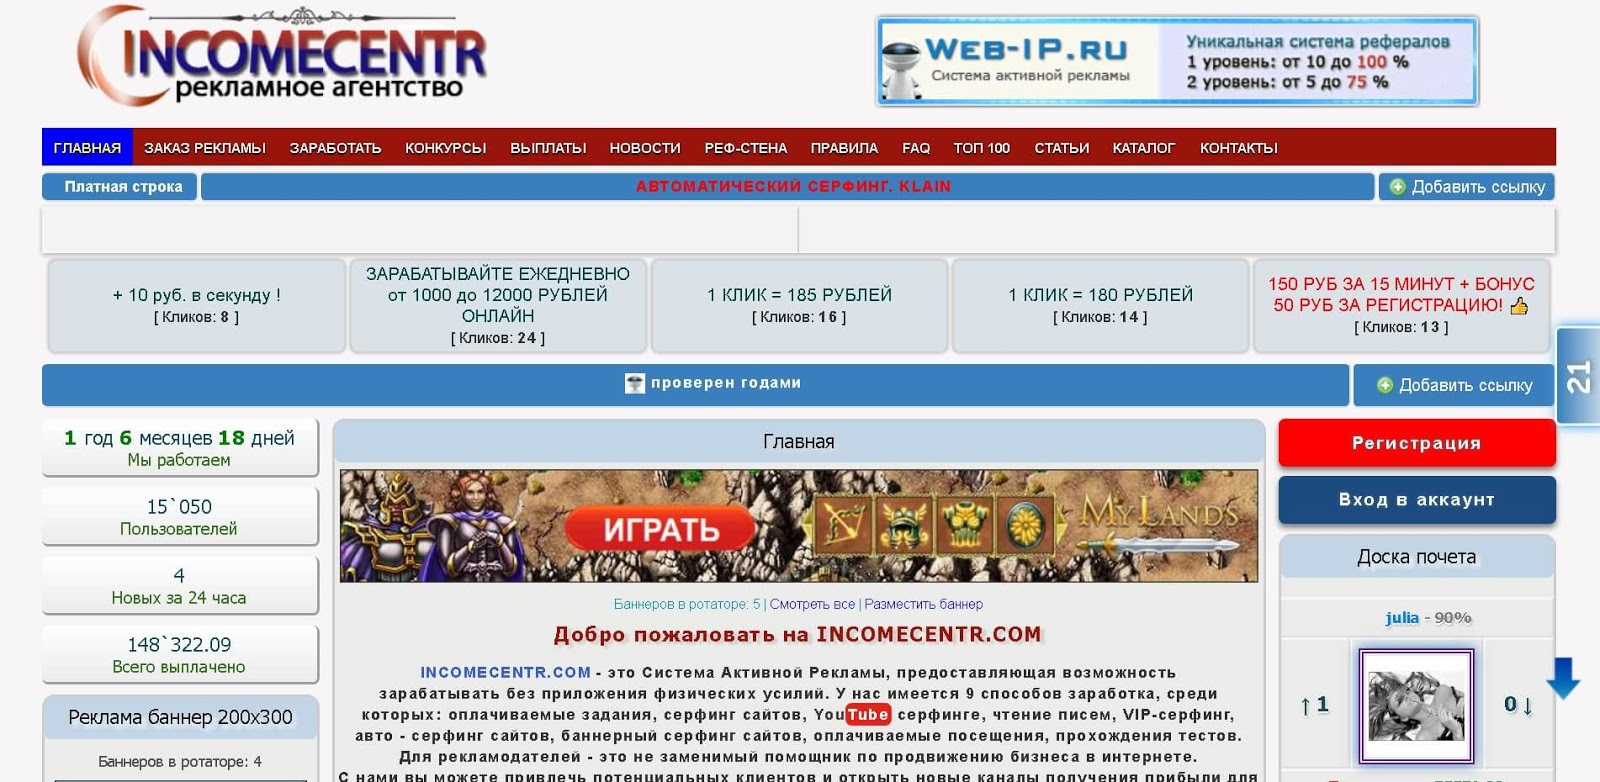 Сайты где платят за просмотр рекламы 40 рублей. 5 сайтов которые платят